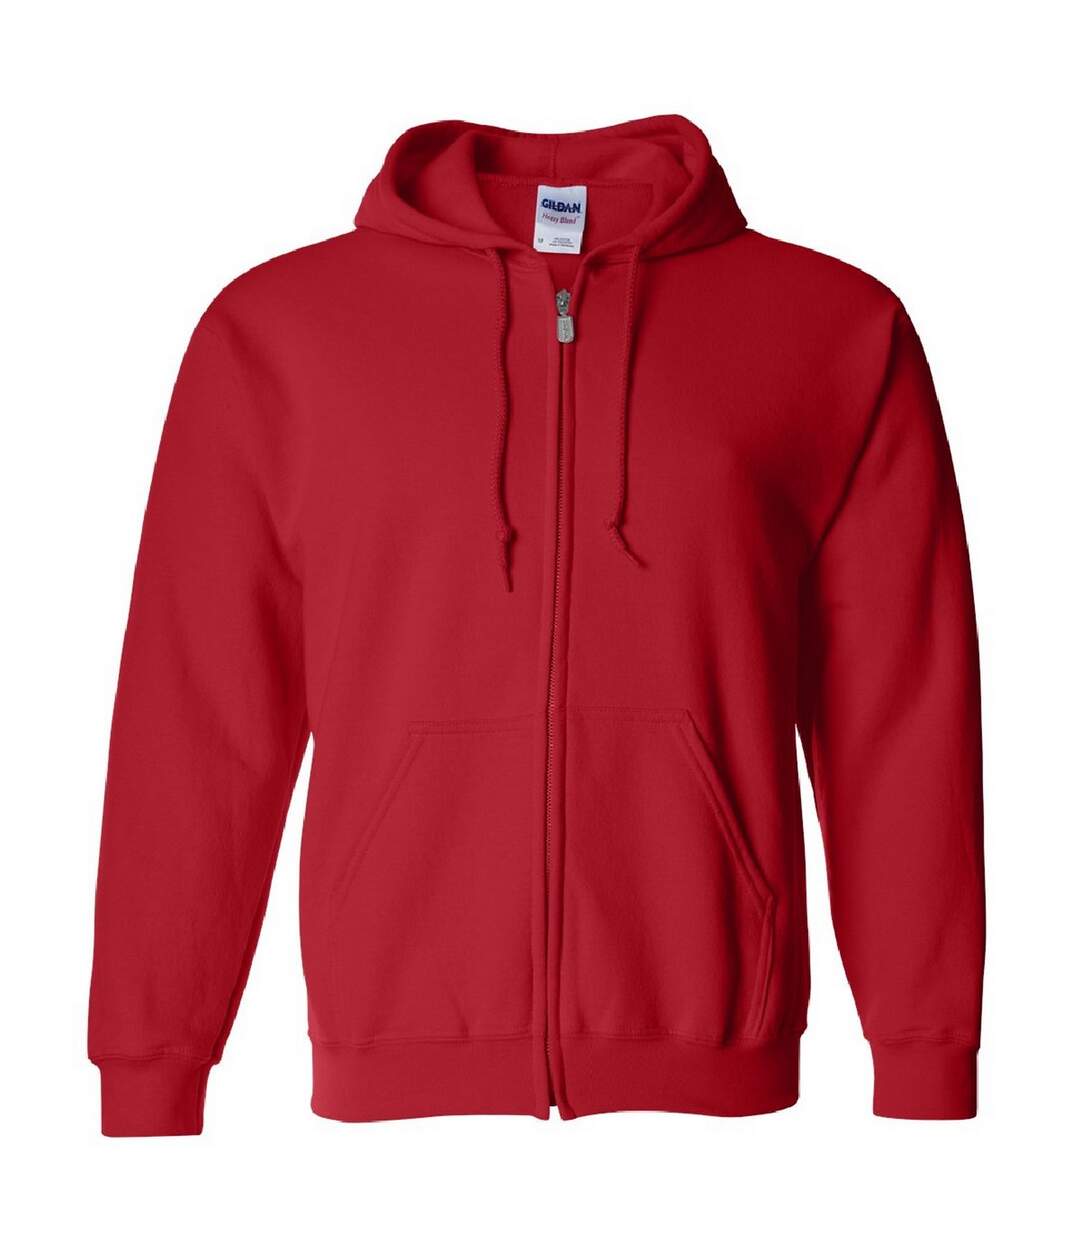 Gildan - Sweatshirt - Homme (Rouge) - UTBC471